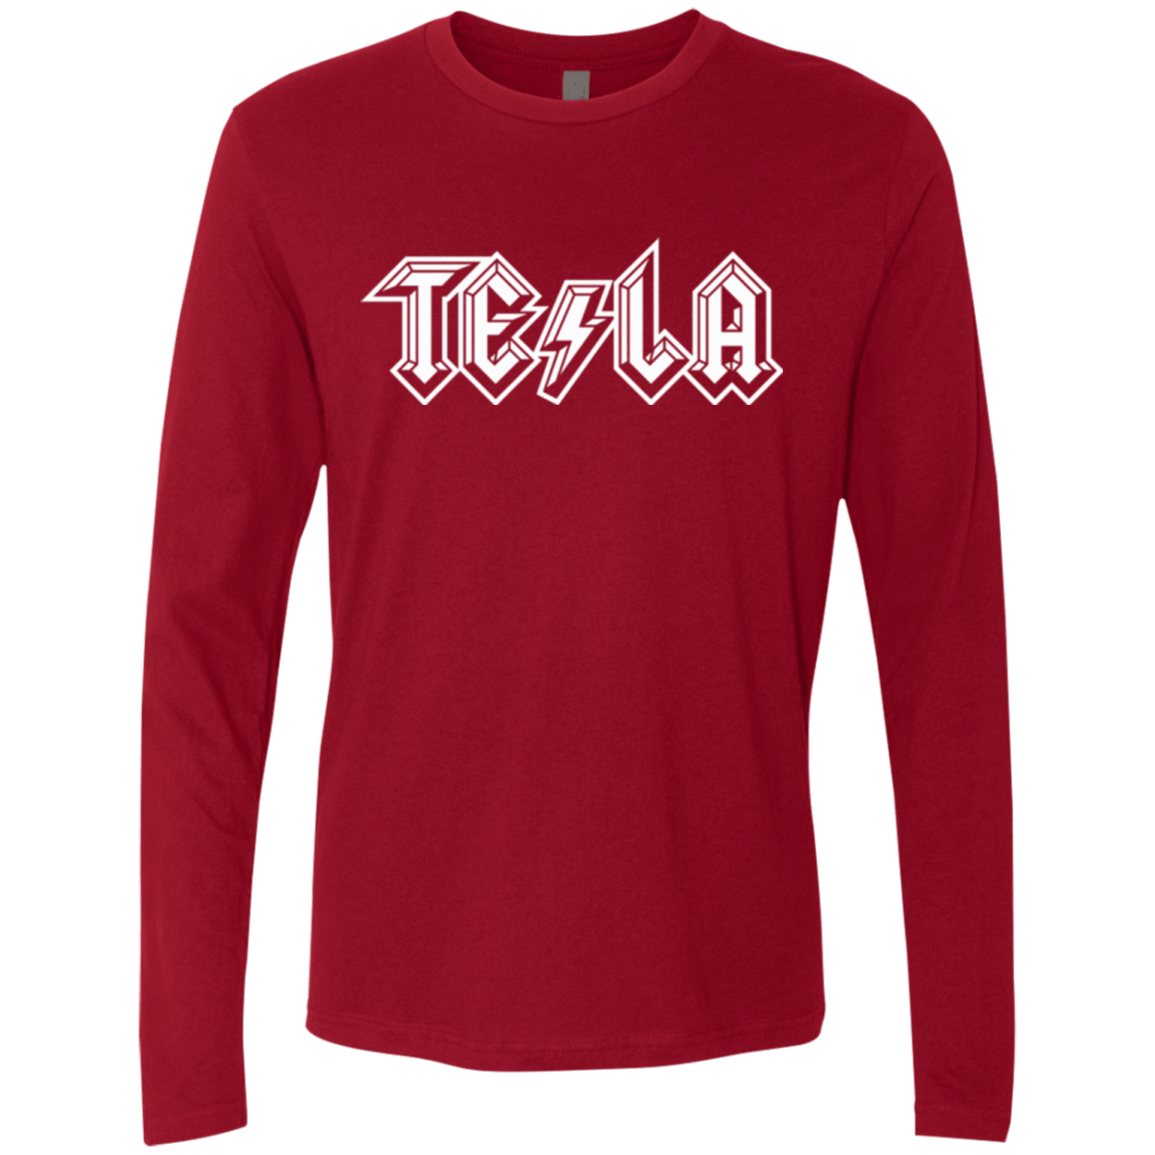 T-Shirts Cardinal / Small TESLA Men's Premium Long Sleeve